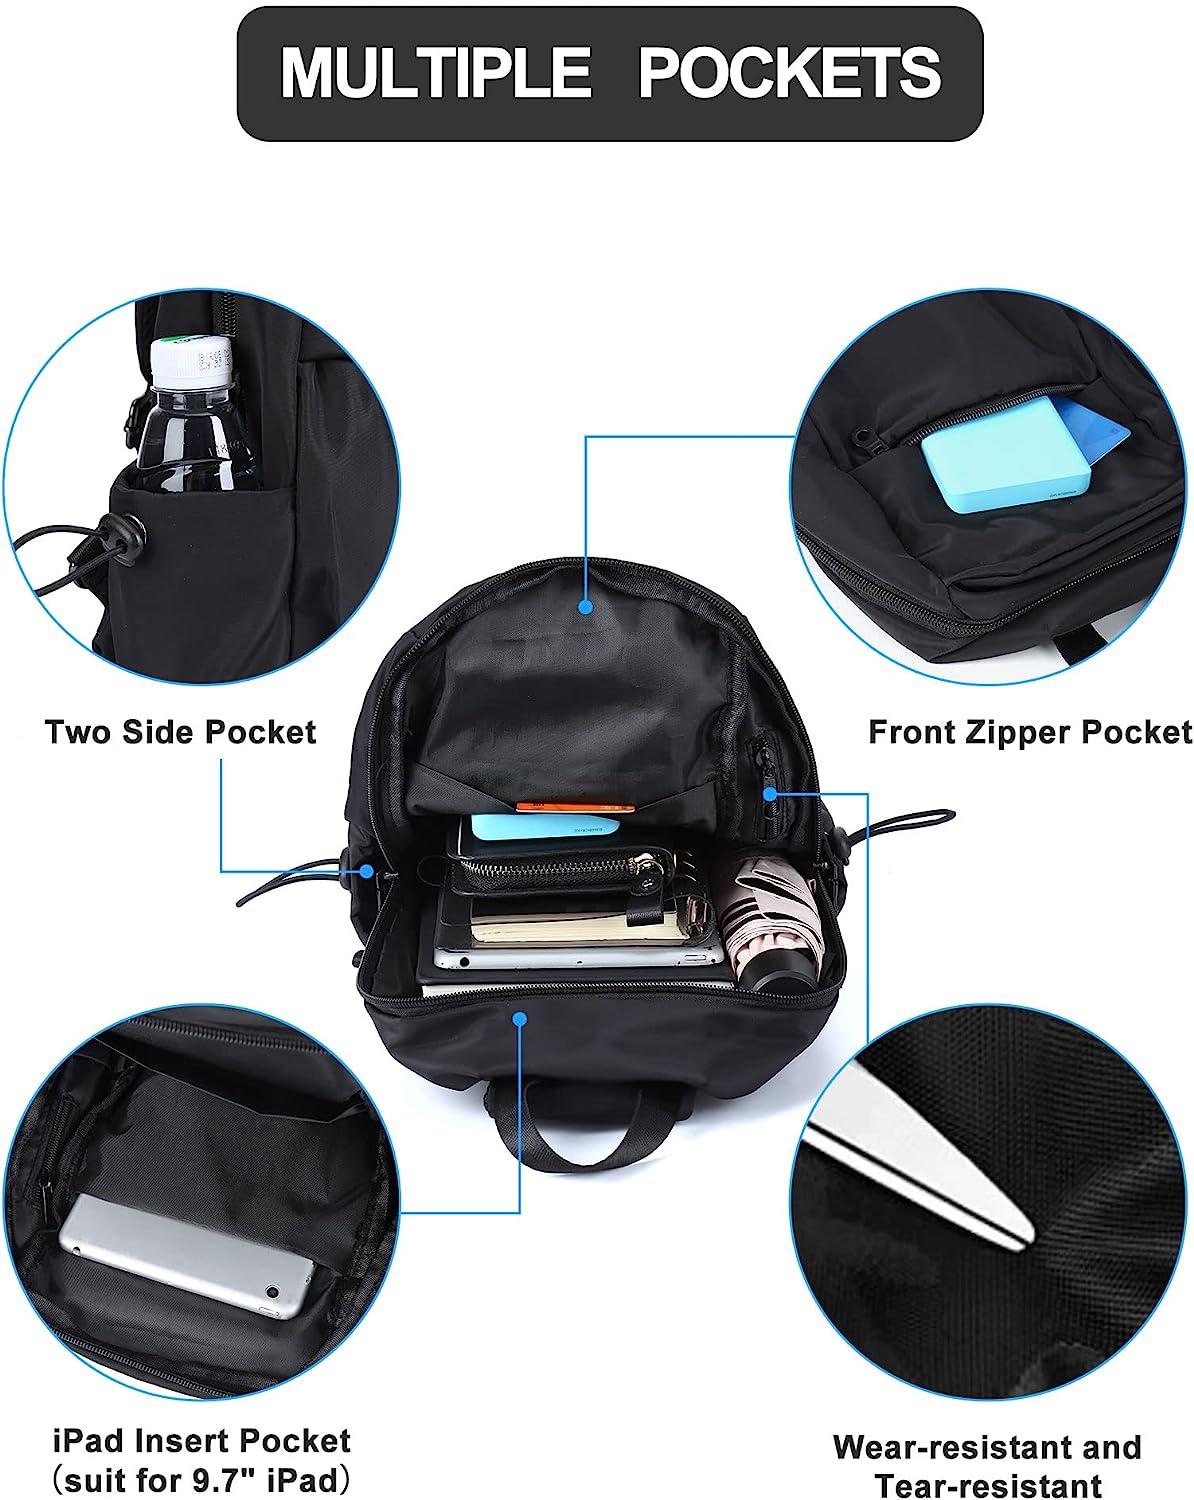 SEAFEW Small Black Sling Crossbody Backpack Shoulder Bag for Men Women, Lightweight One Strap Backpack Sling Bag Backpack for Hiking Walking Biking